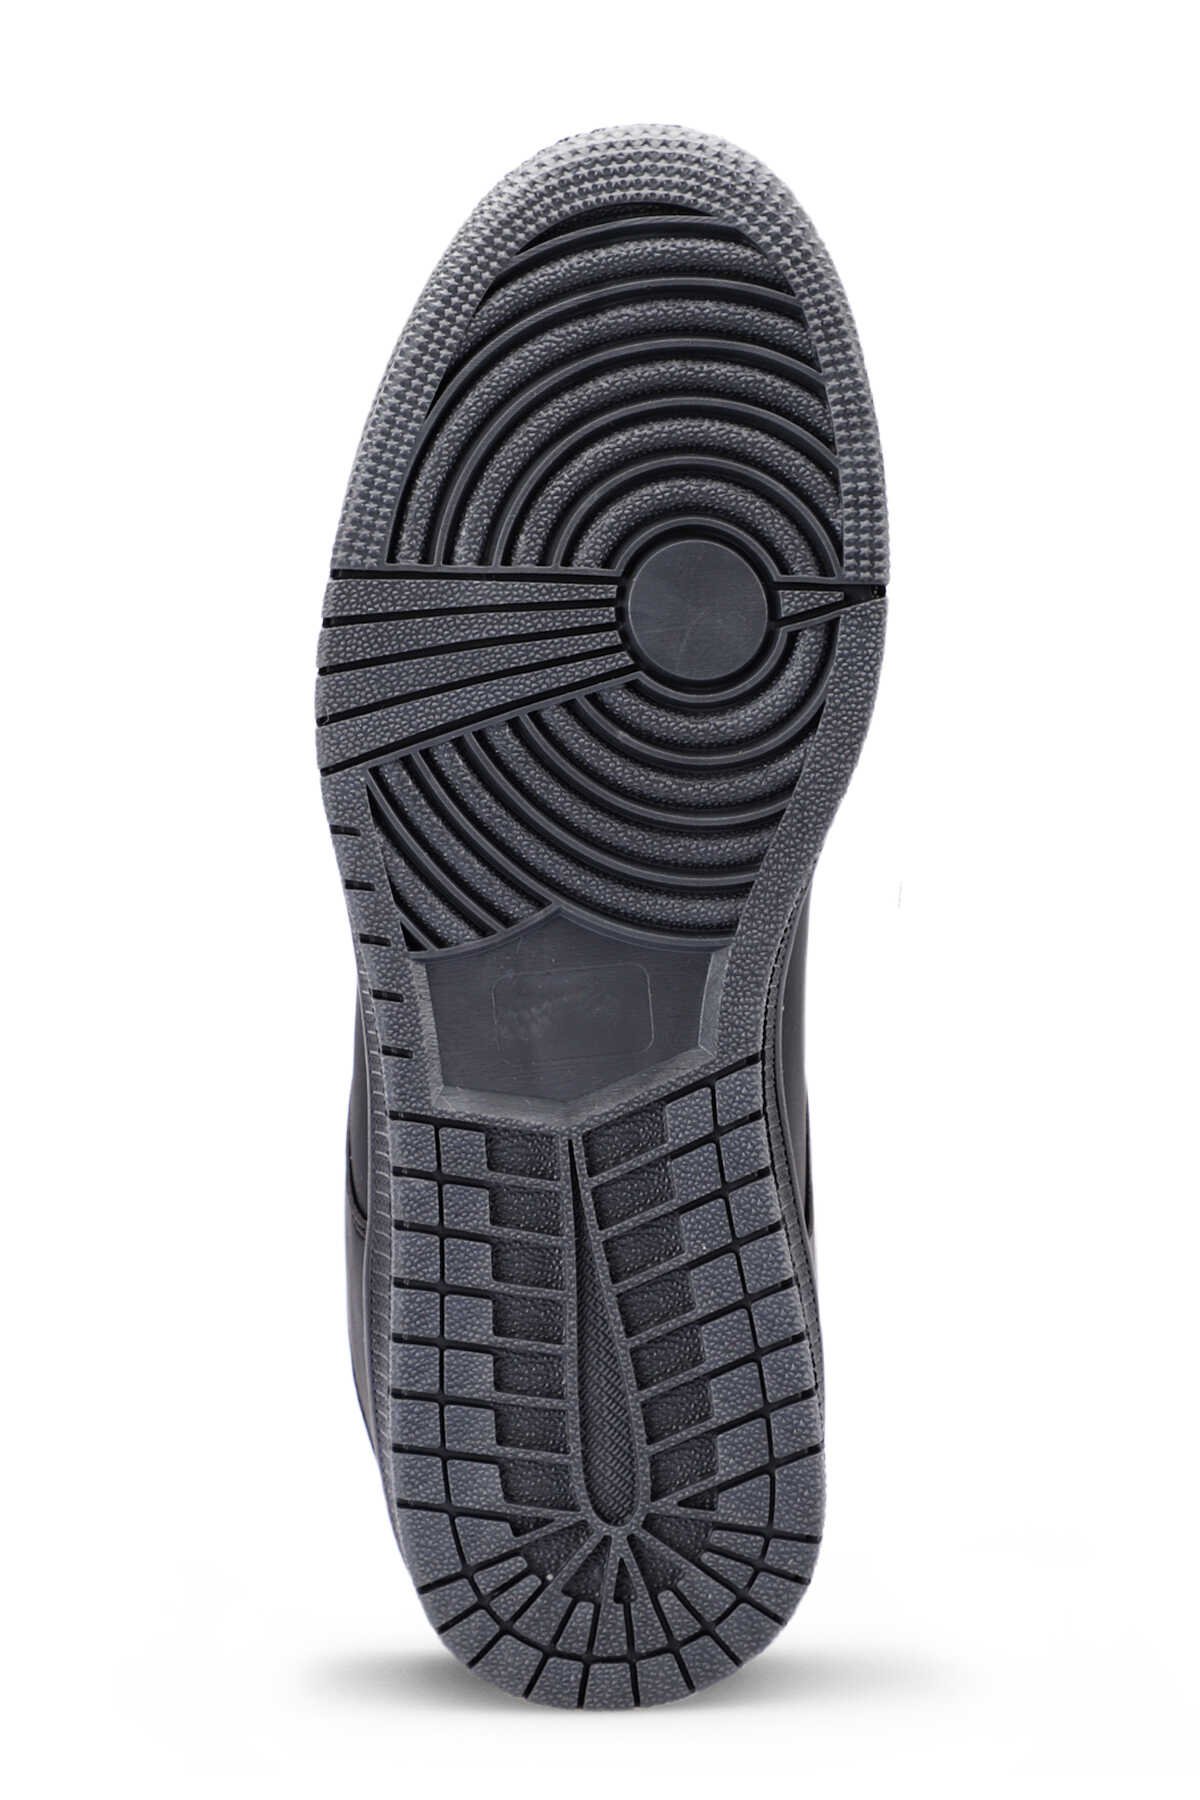 Slazenger LABOR Sneaker Kadın Ayakkabı Siyah / Siyah